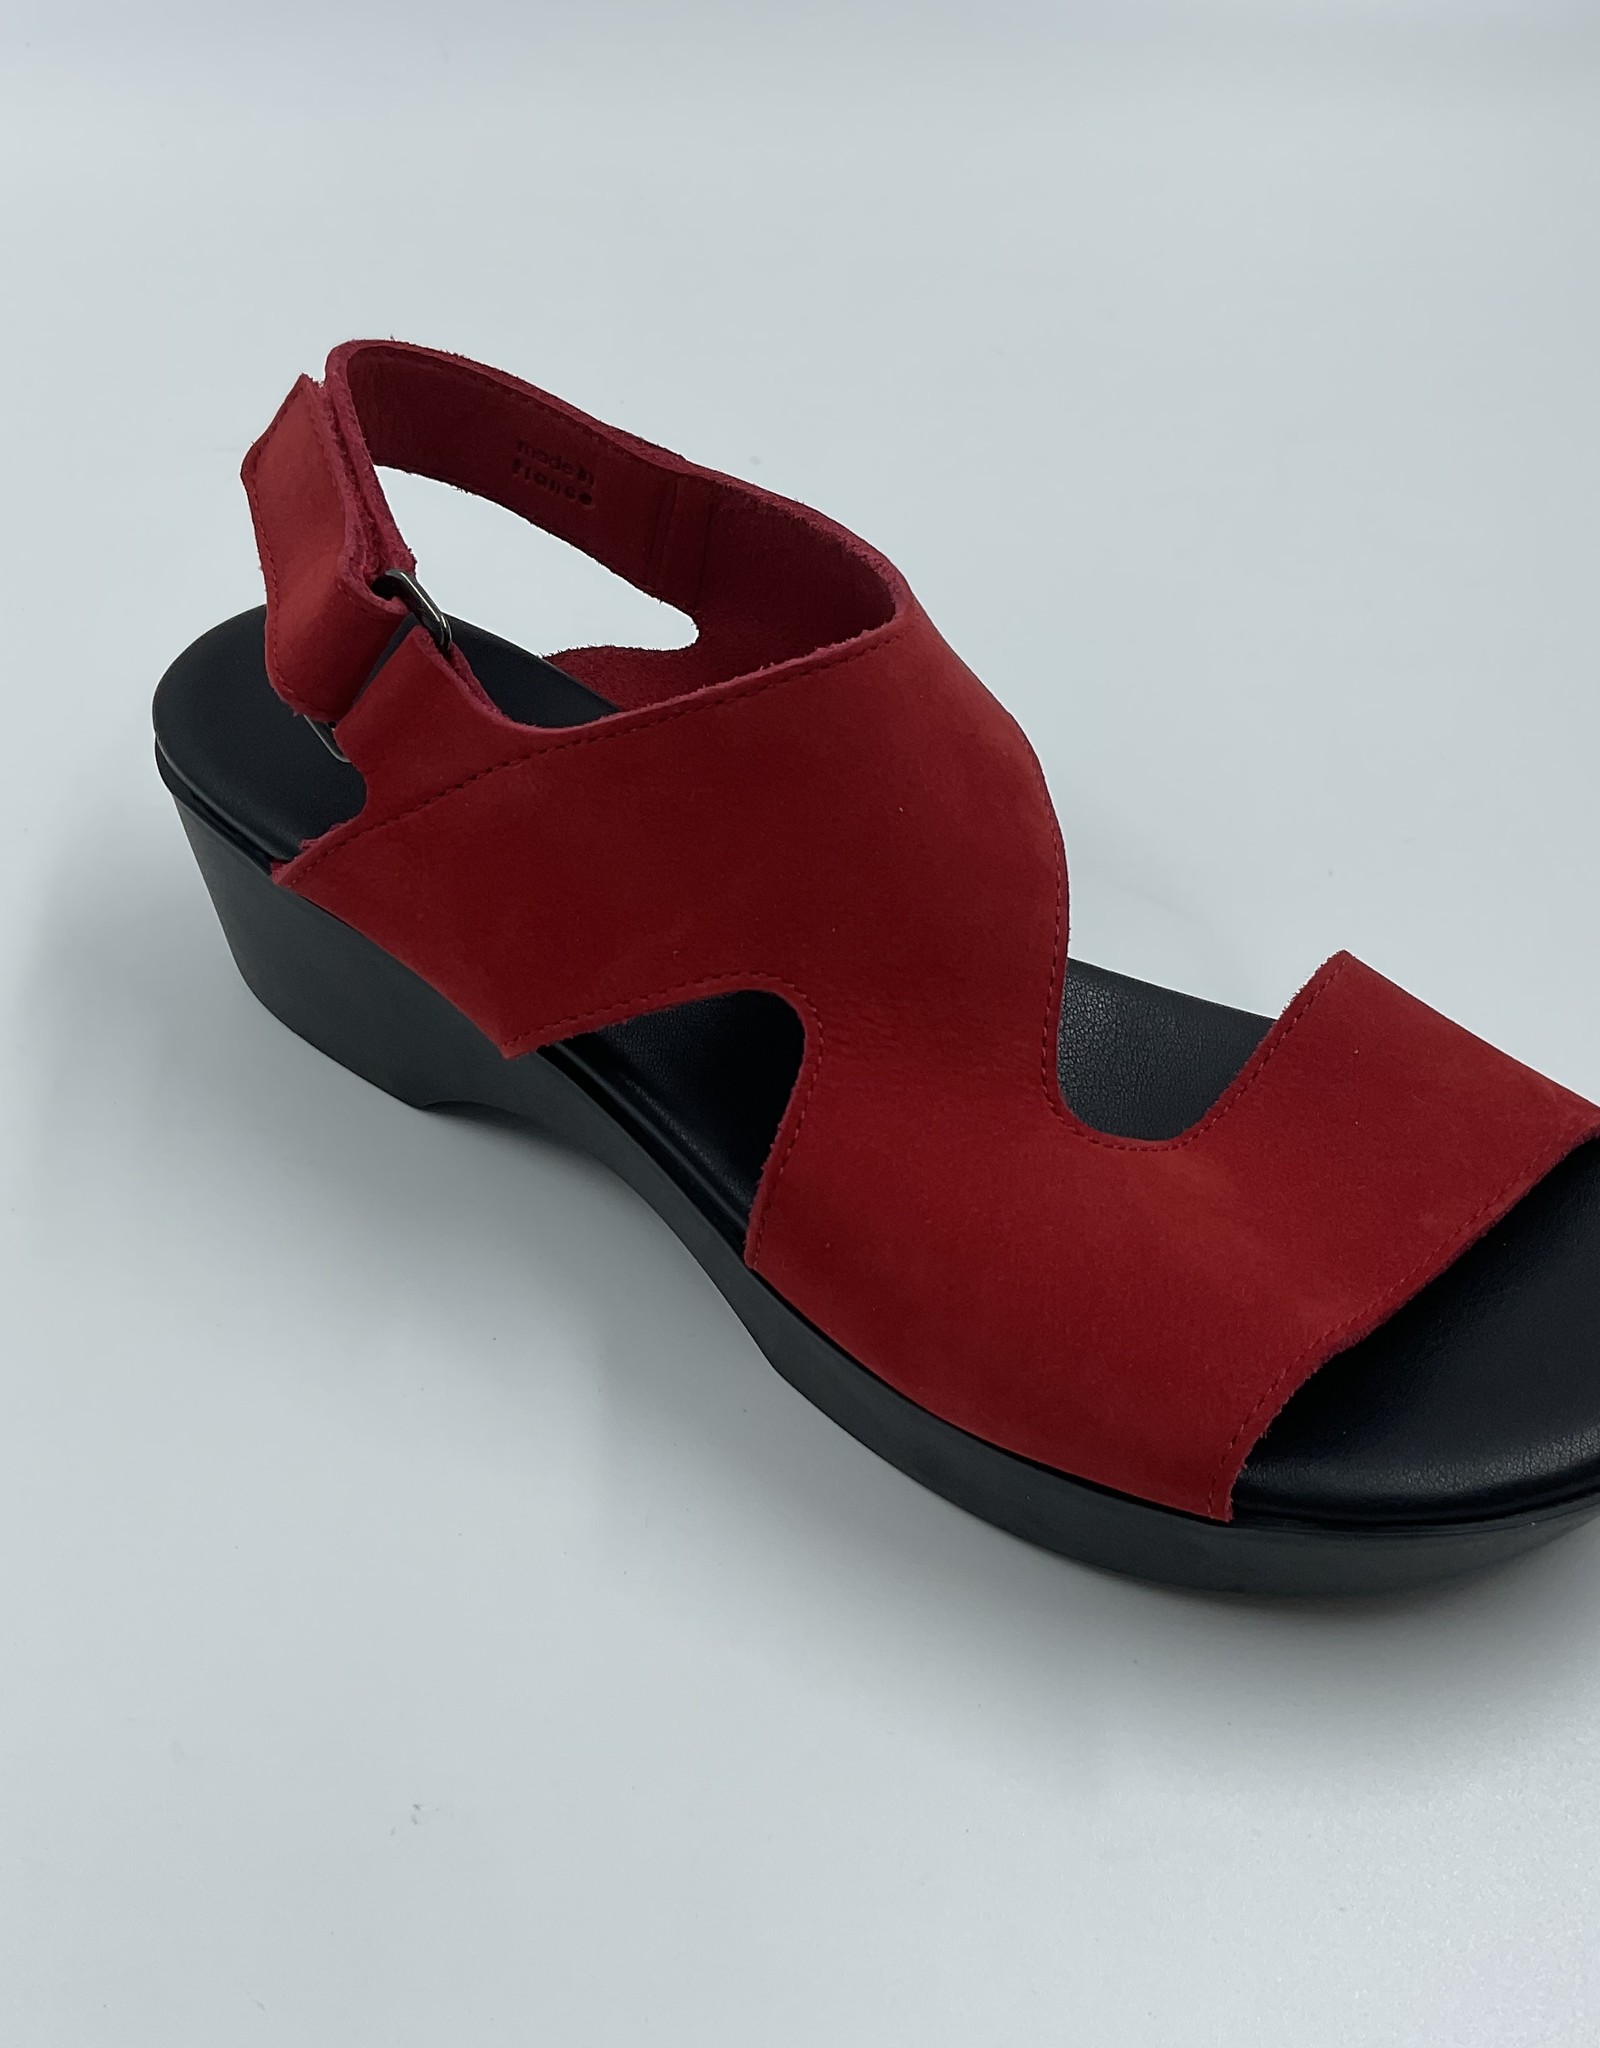 ARCHE KIMKHA - Alexandria's Shoes for Women